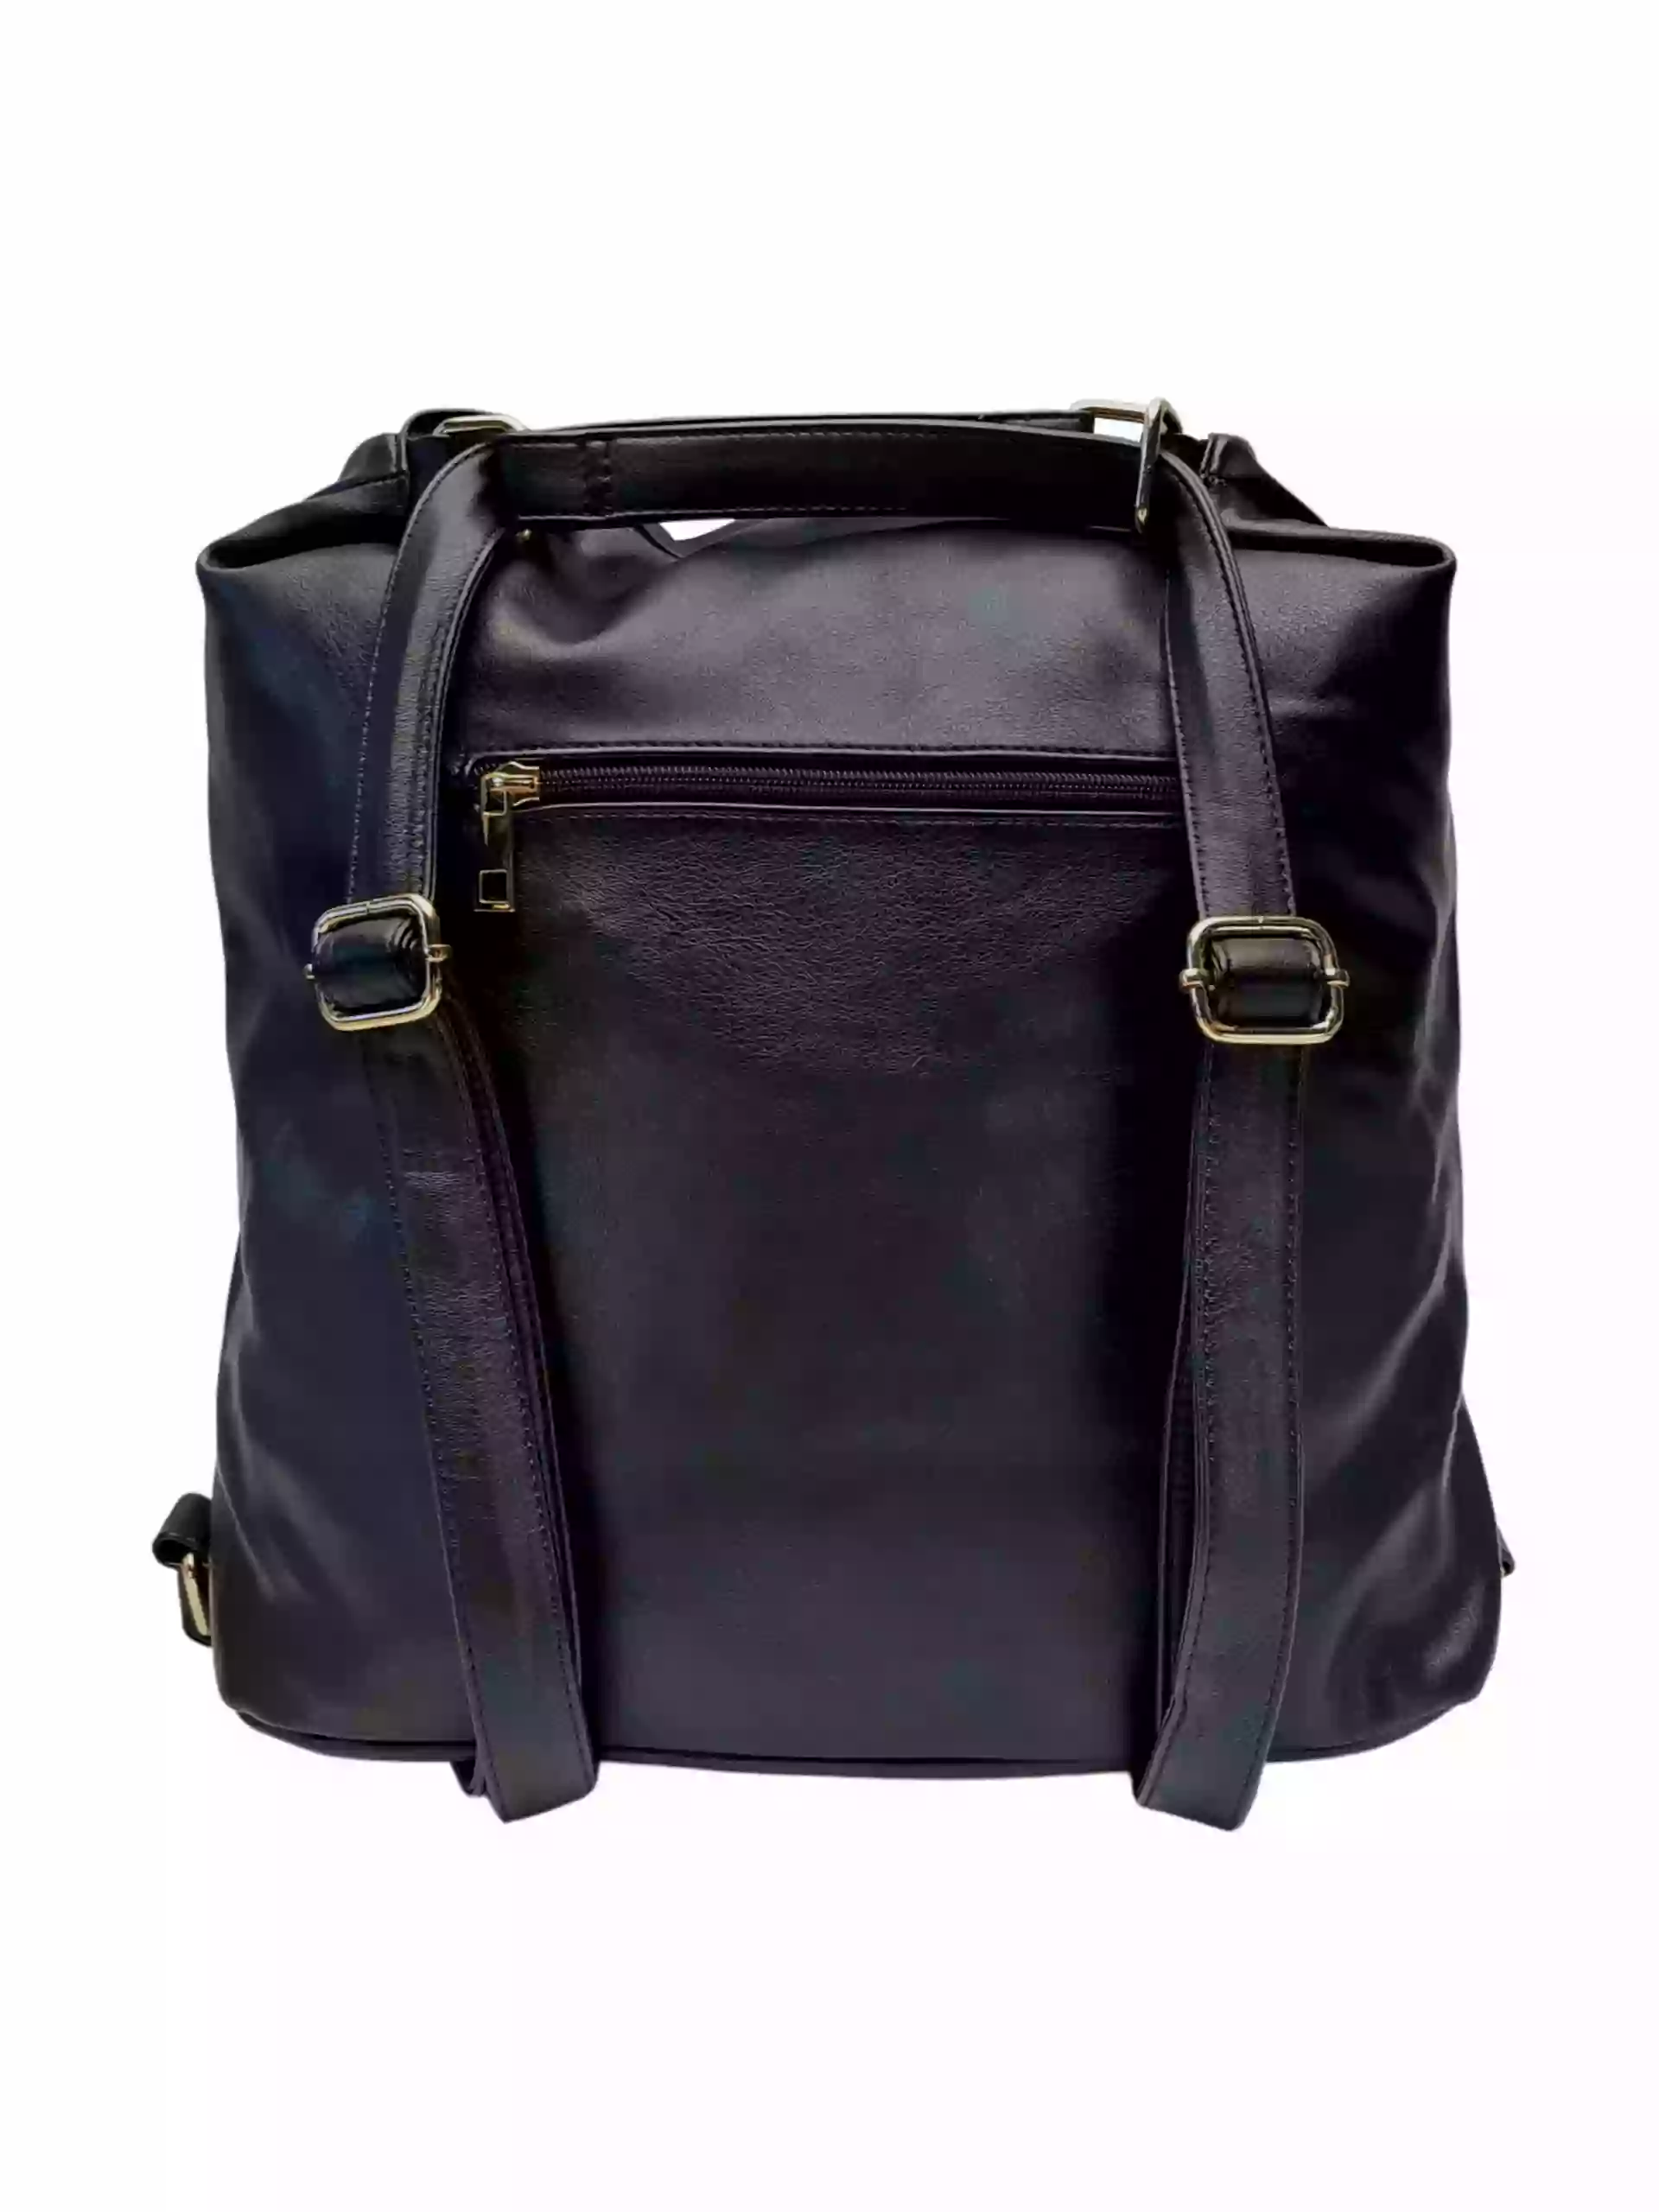 Prostorný černý kabelko-batoh 2v1 s přední kapsou, Caely, Q3071, zadní strana kabelko-batohu 2v1 s popruhy